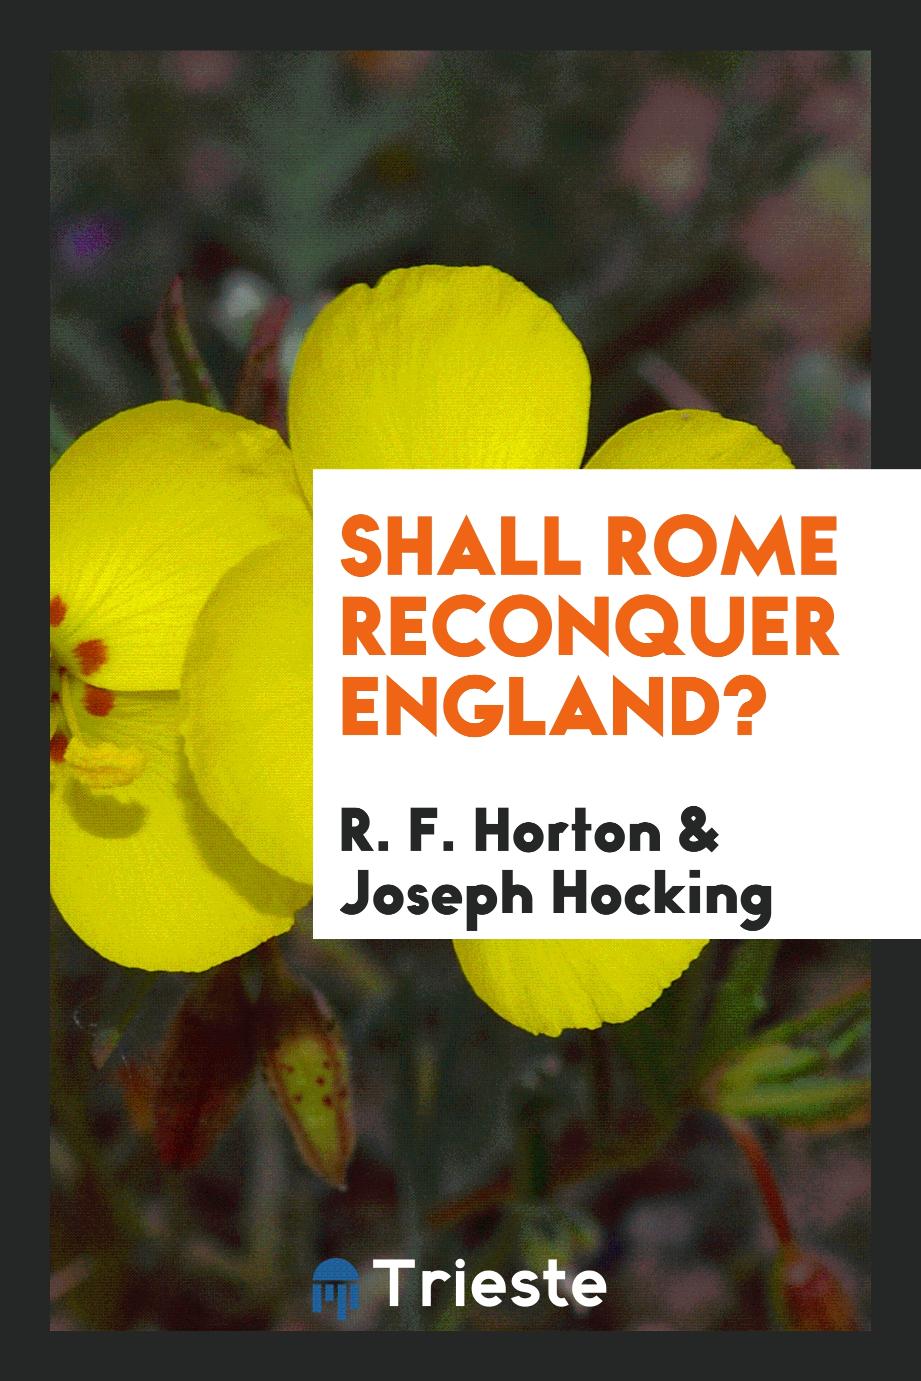 Shall Rome reconquer England?